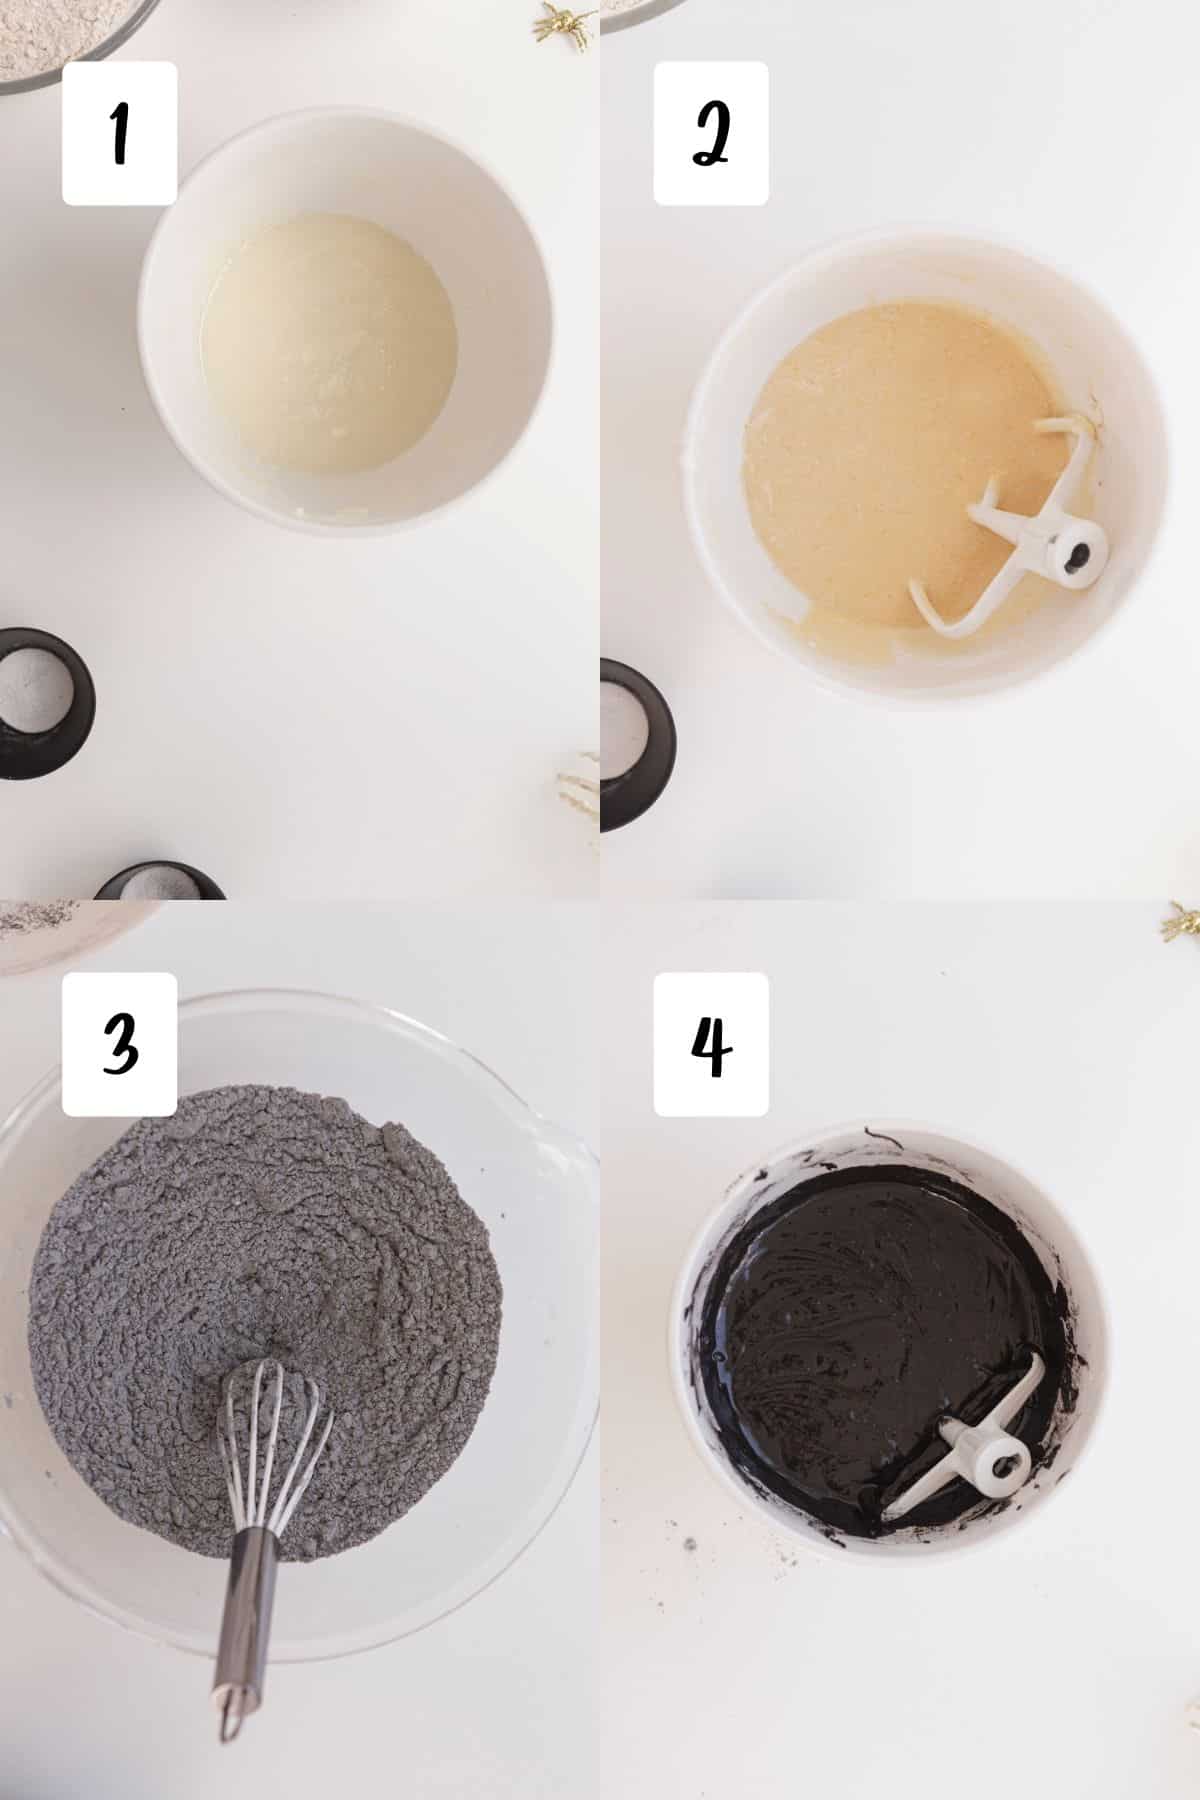 process for making black velvet cake in 4 steps